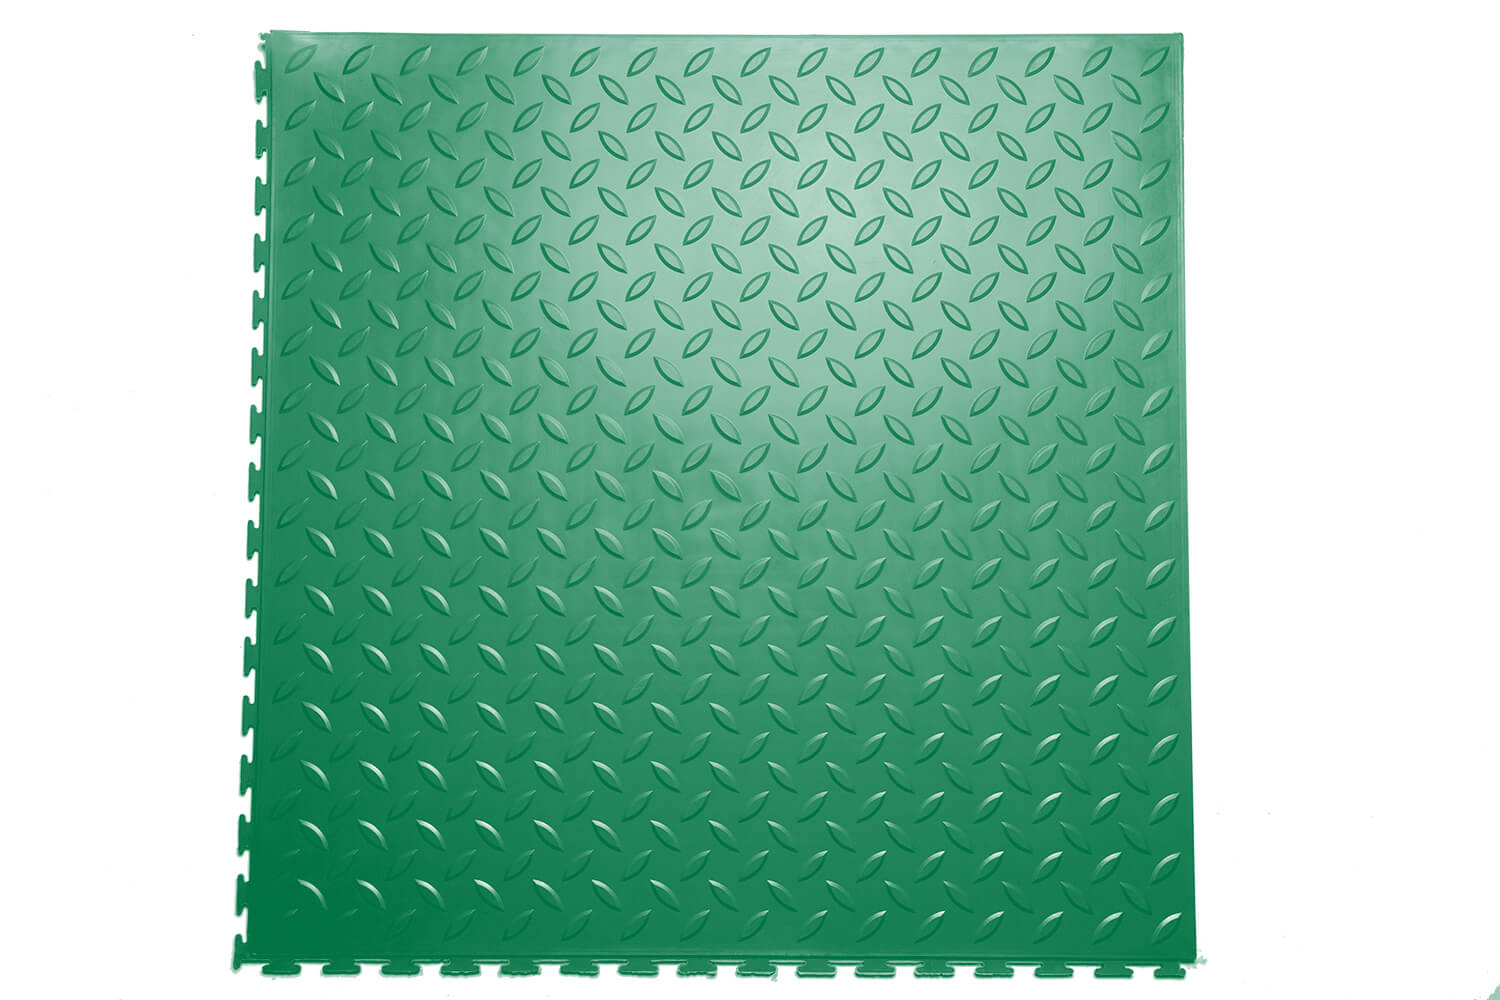 ПВХ плитка Sold Grain 5 мм, зеленый (скрытый замок)